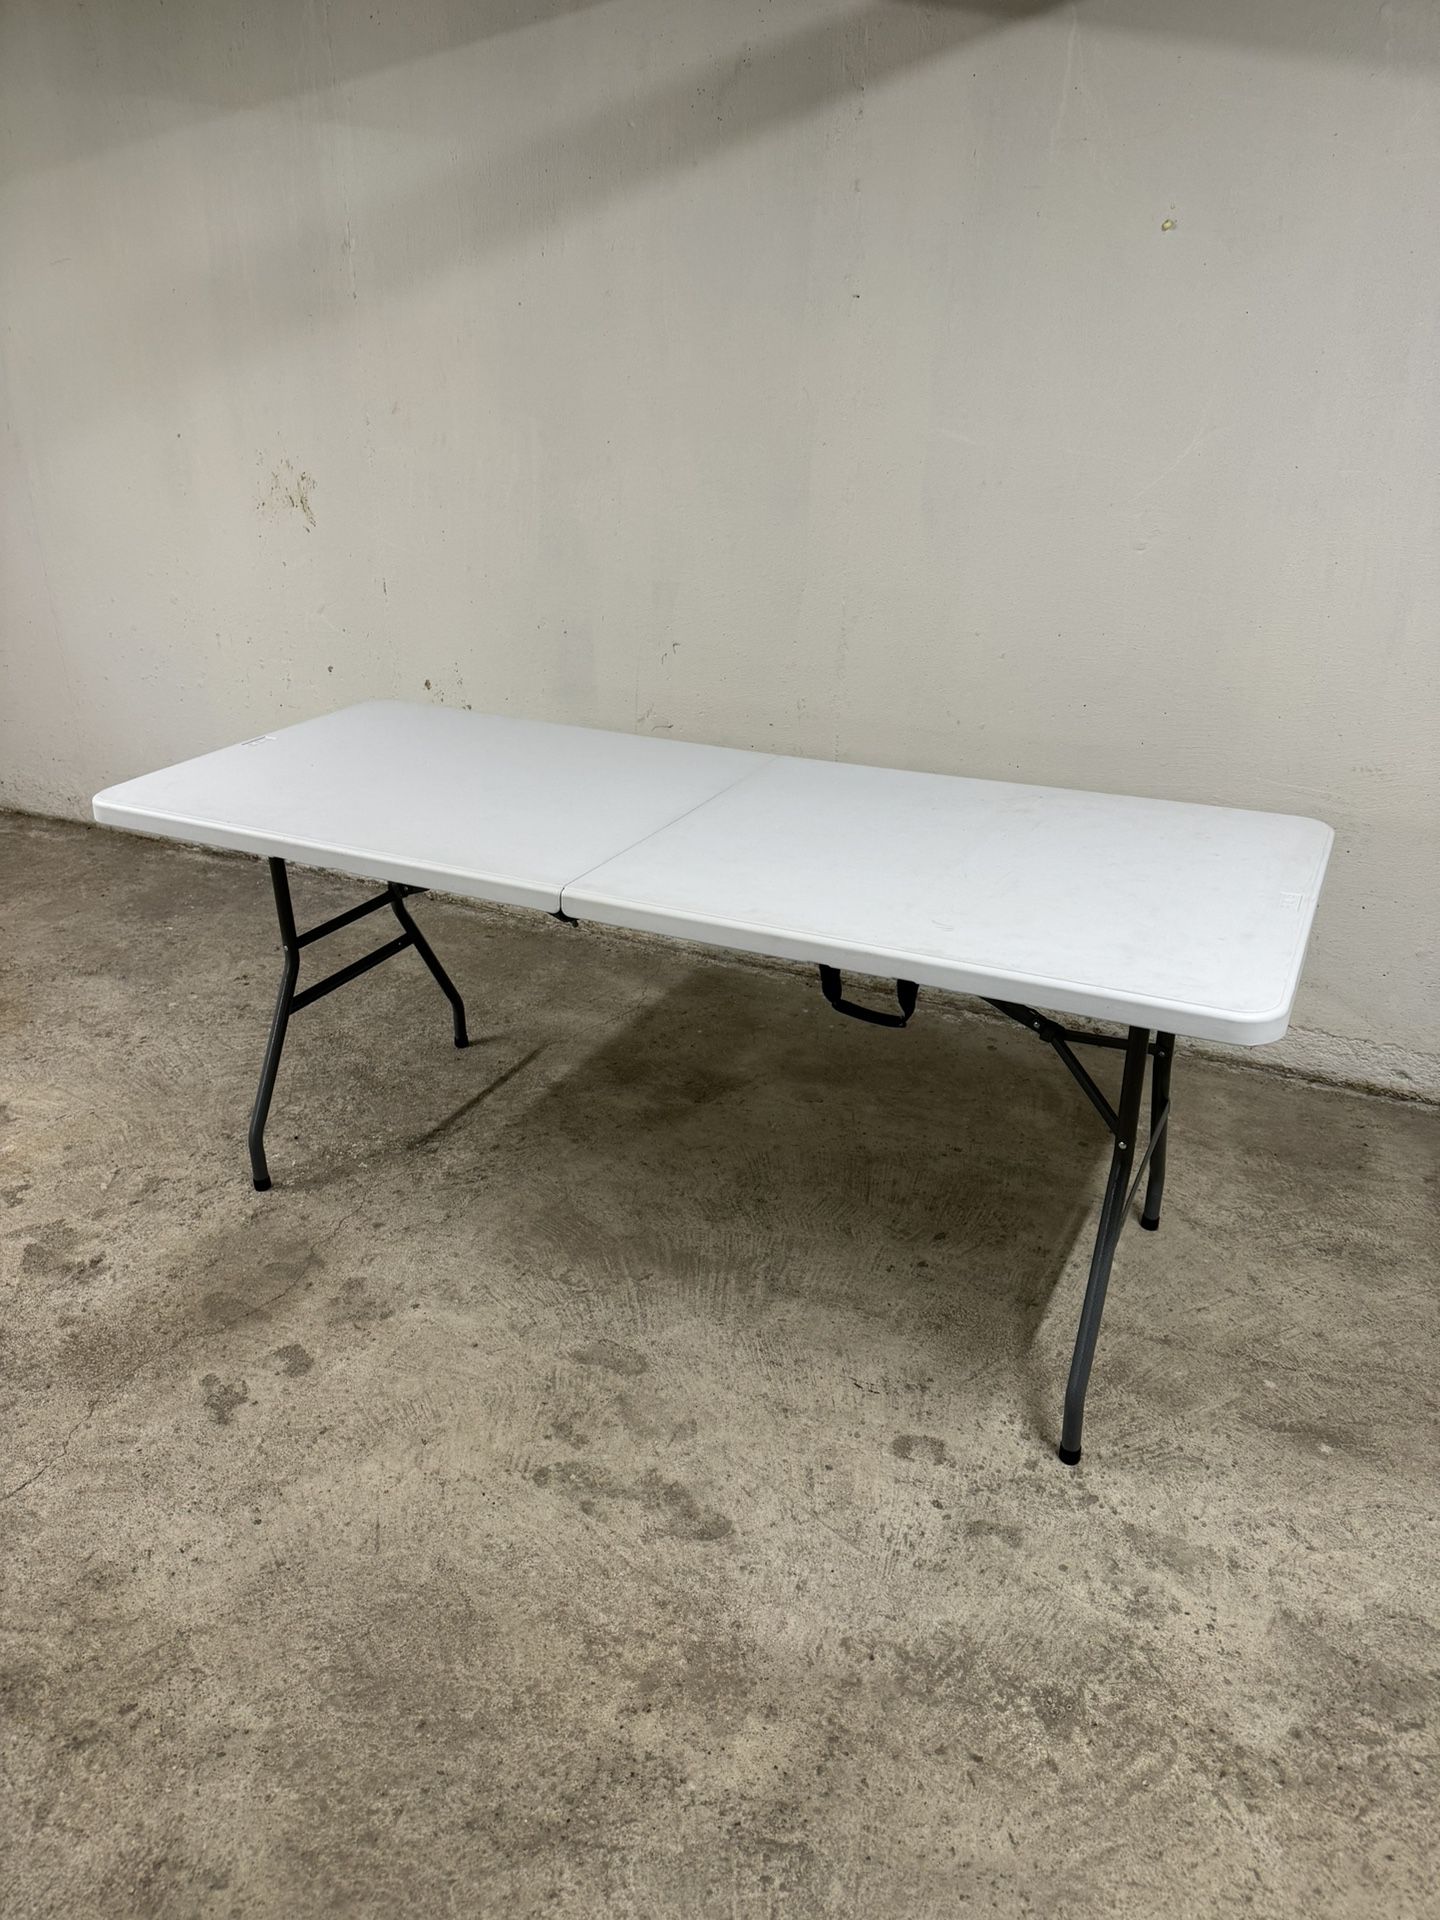 Large Folding Table Desk Foldable Portable 6ft